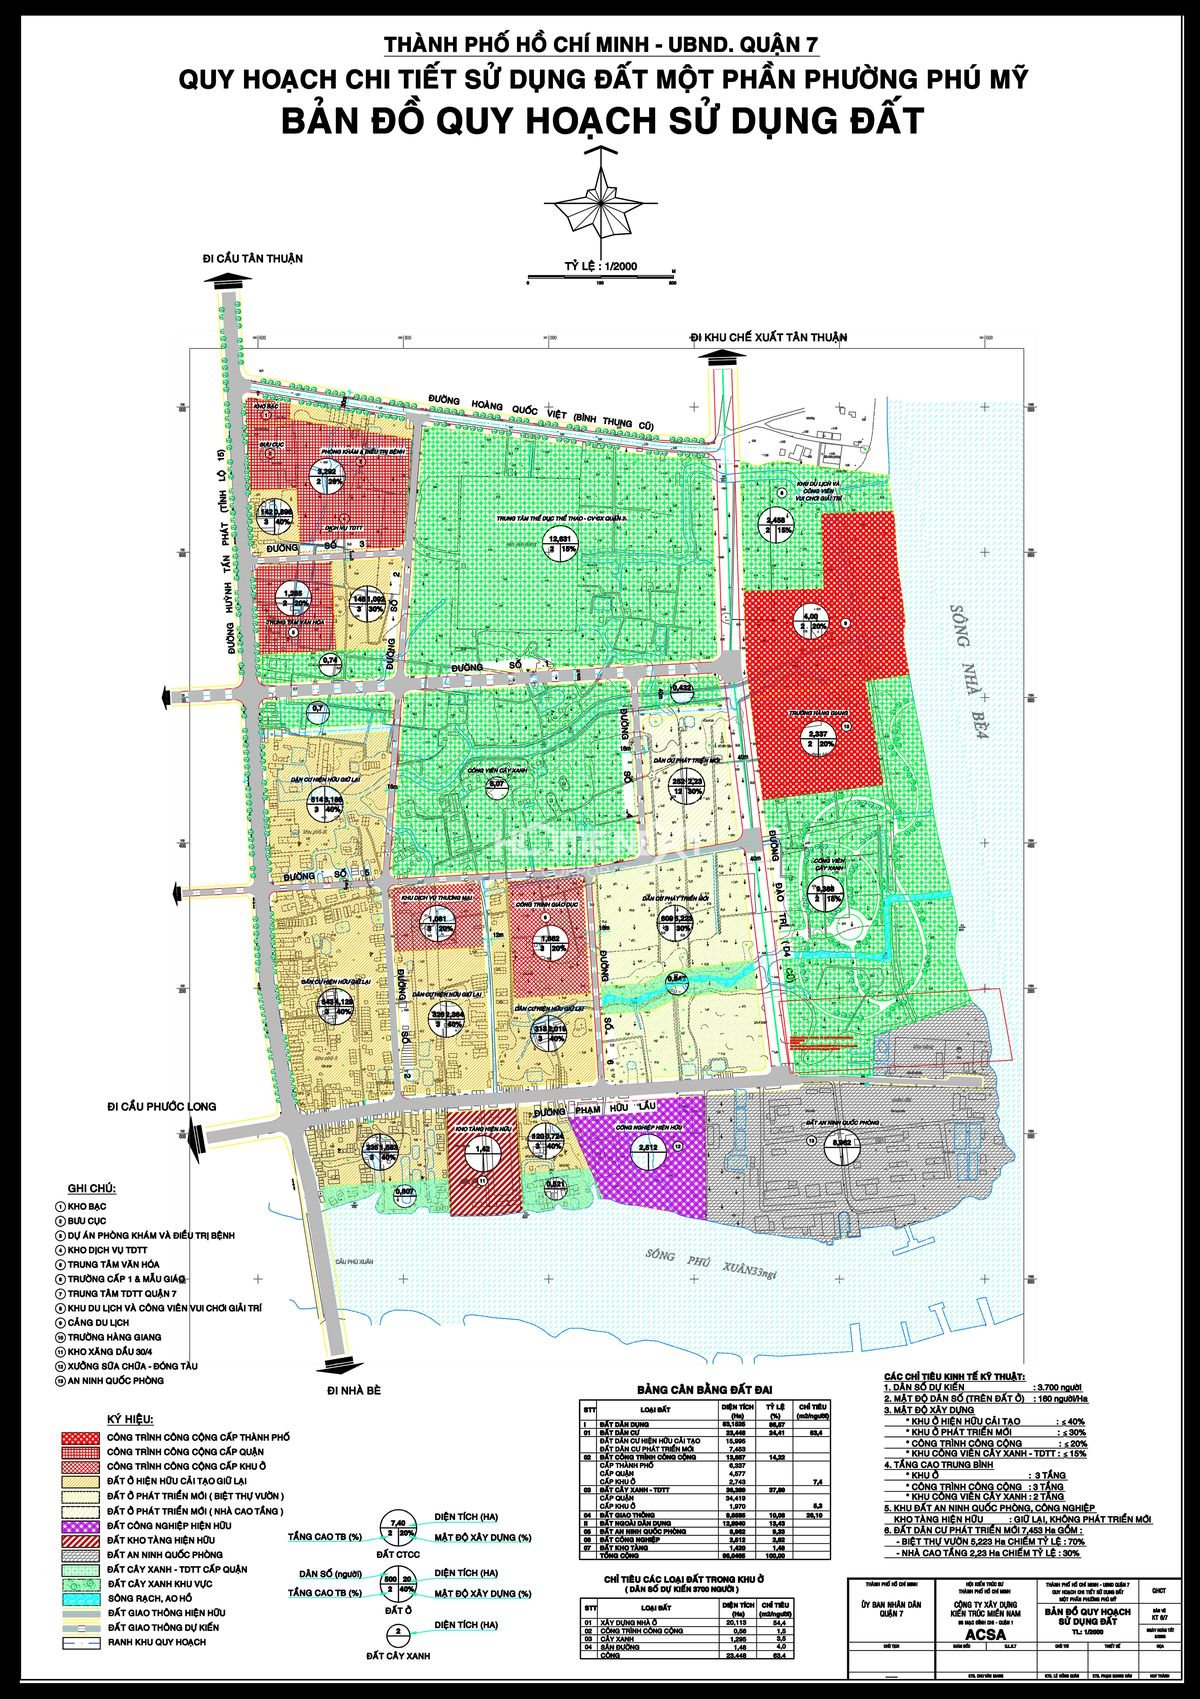 Bản đồ quy hoạch 1/2000 Đông phường Phú Mỹ Quận 7